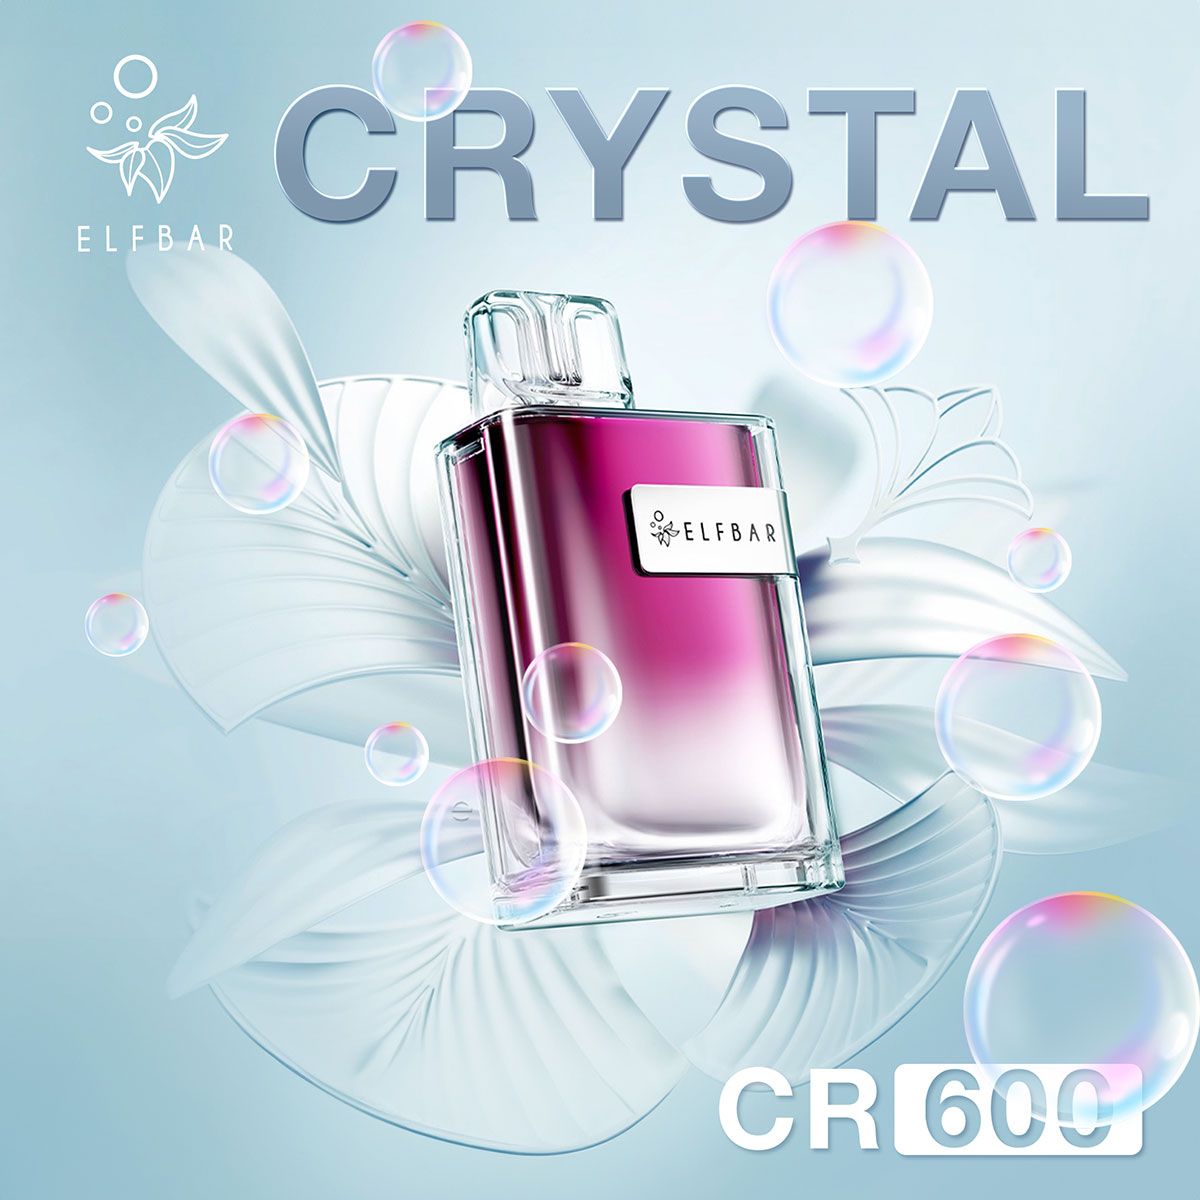 ELFBAR Crystal CR600 Strawberry Ice Einweg E Zigarette 20mg/ml